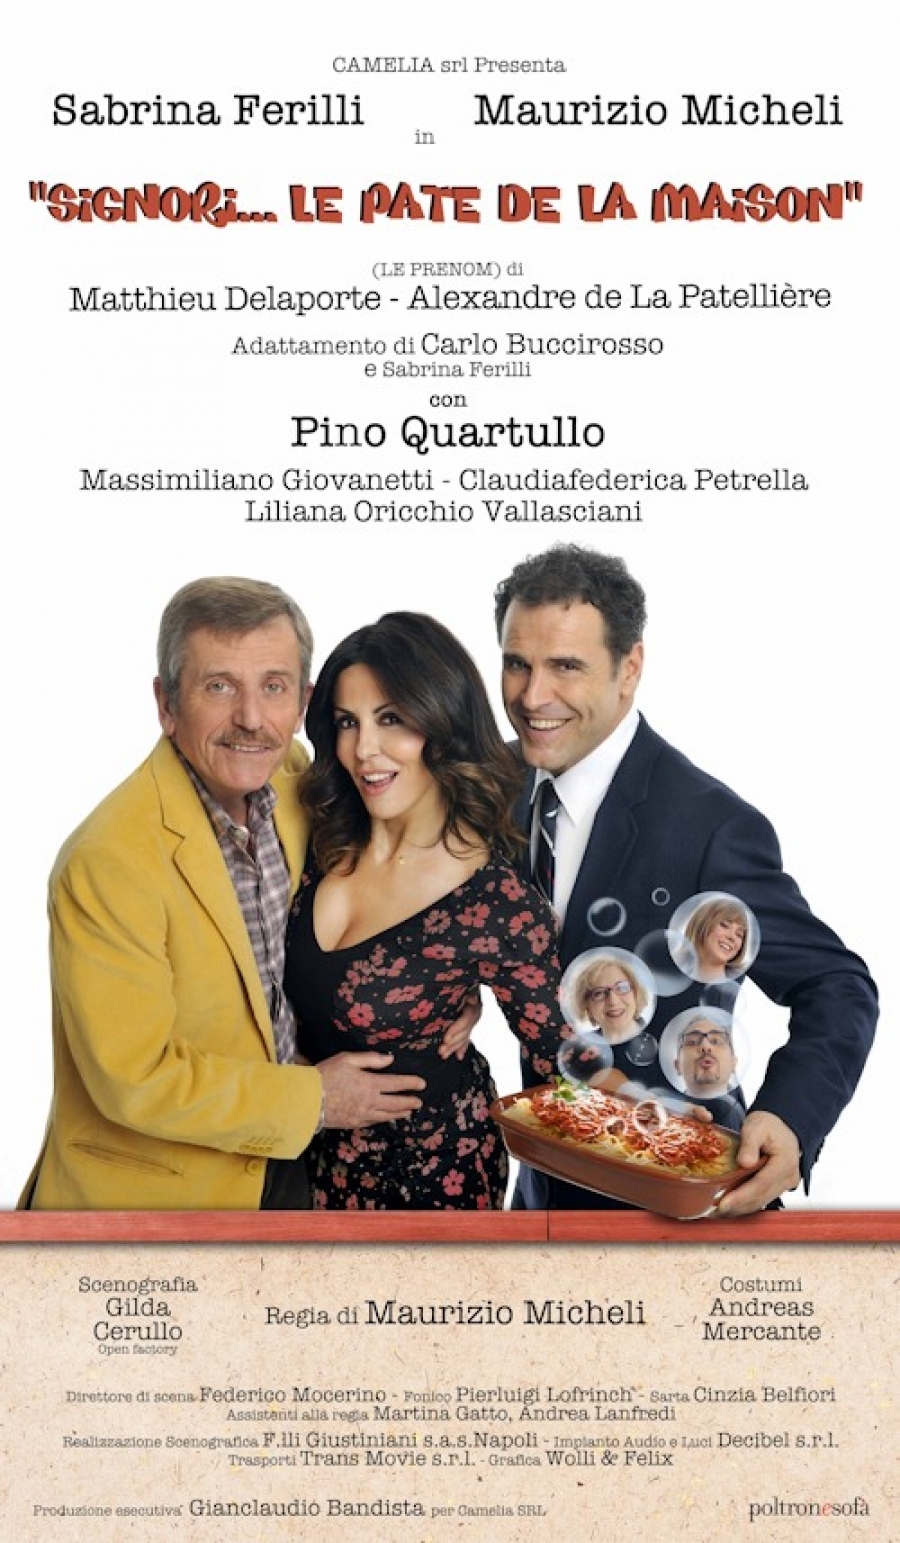 Sabrina Ferilli e Maurizio Micheli in Signori… le patè de la maison!